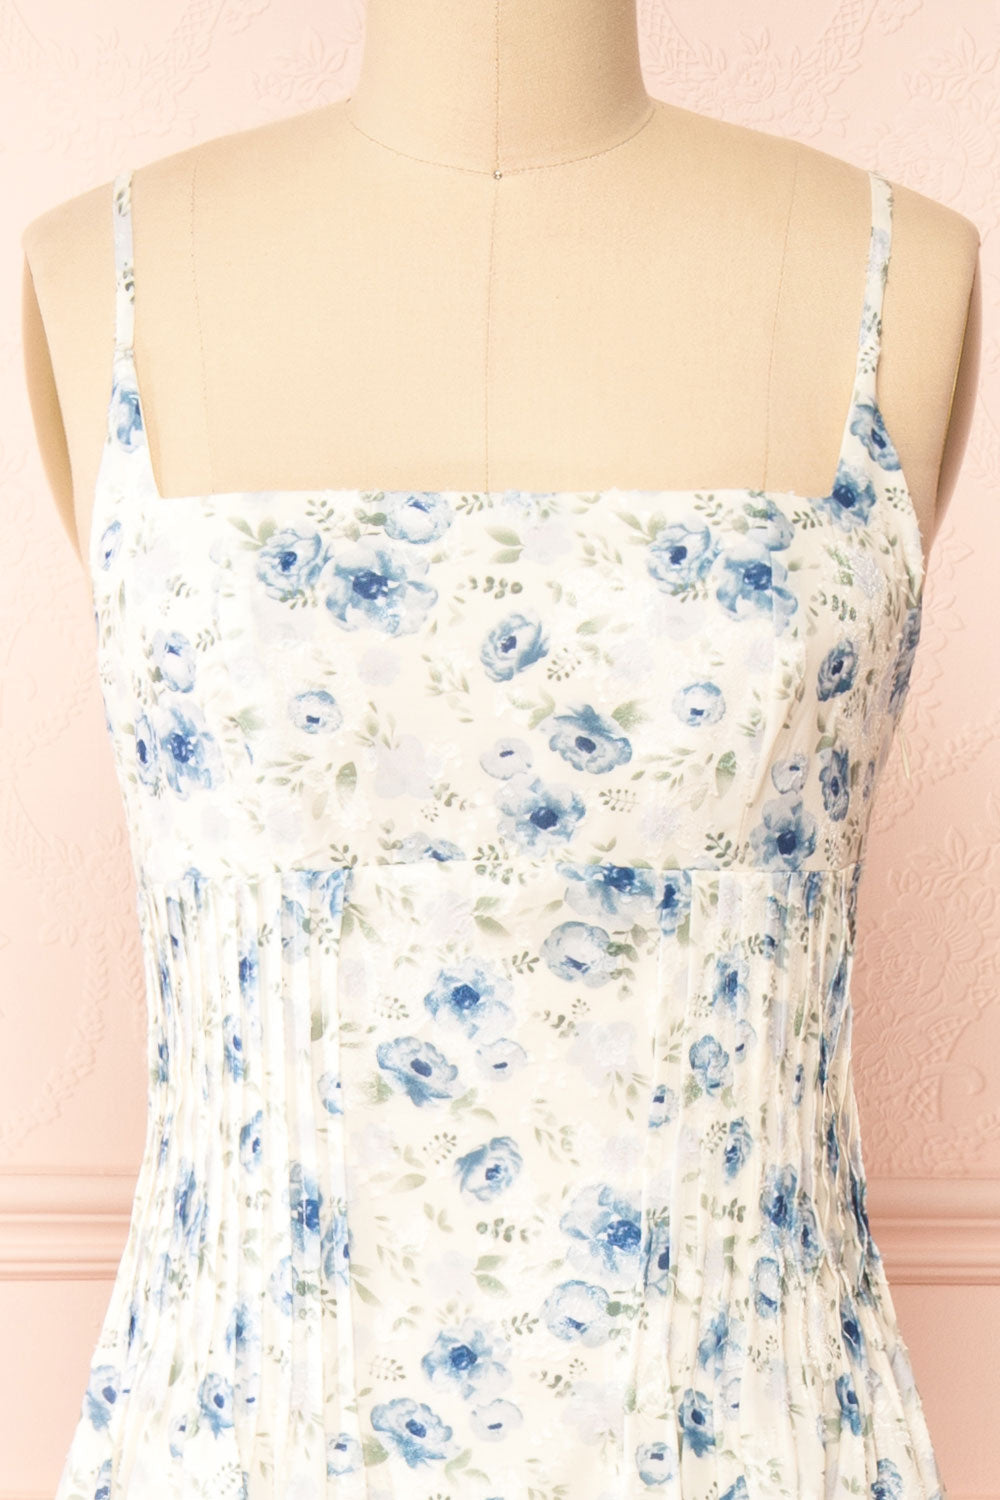 Seraphine Corset Midi Floral Dress | Boutique 1861 front close-up